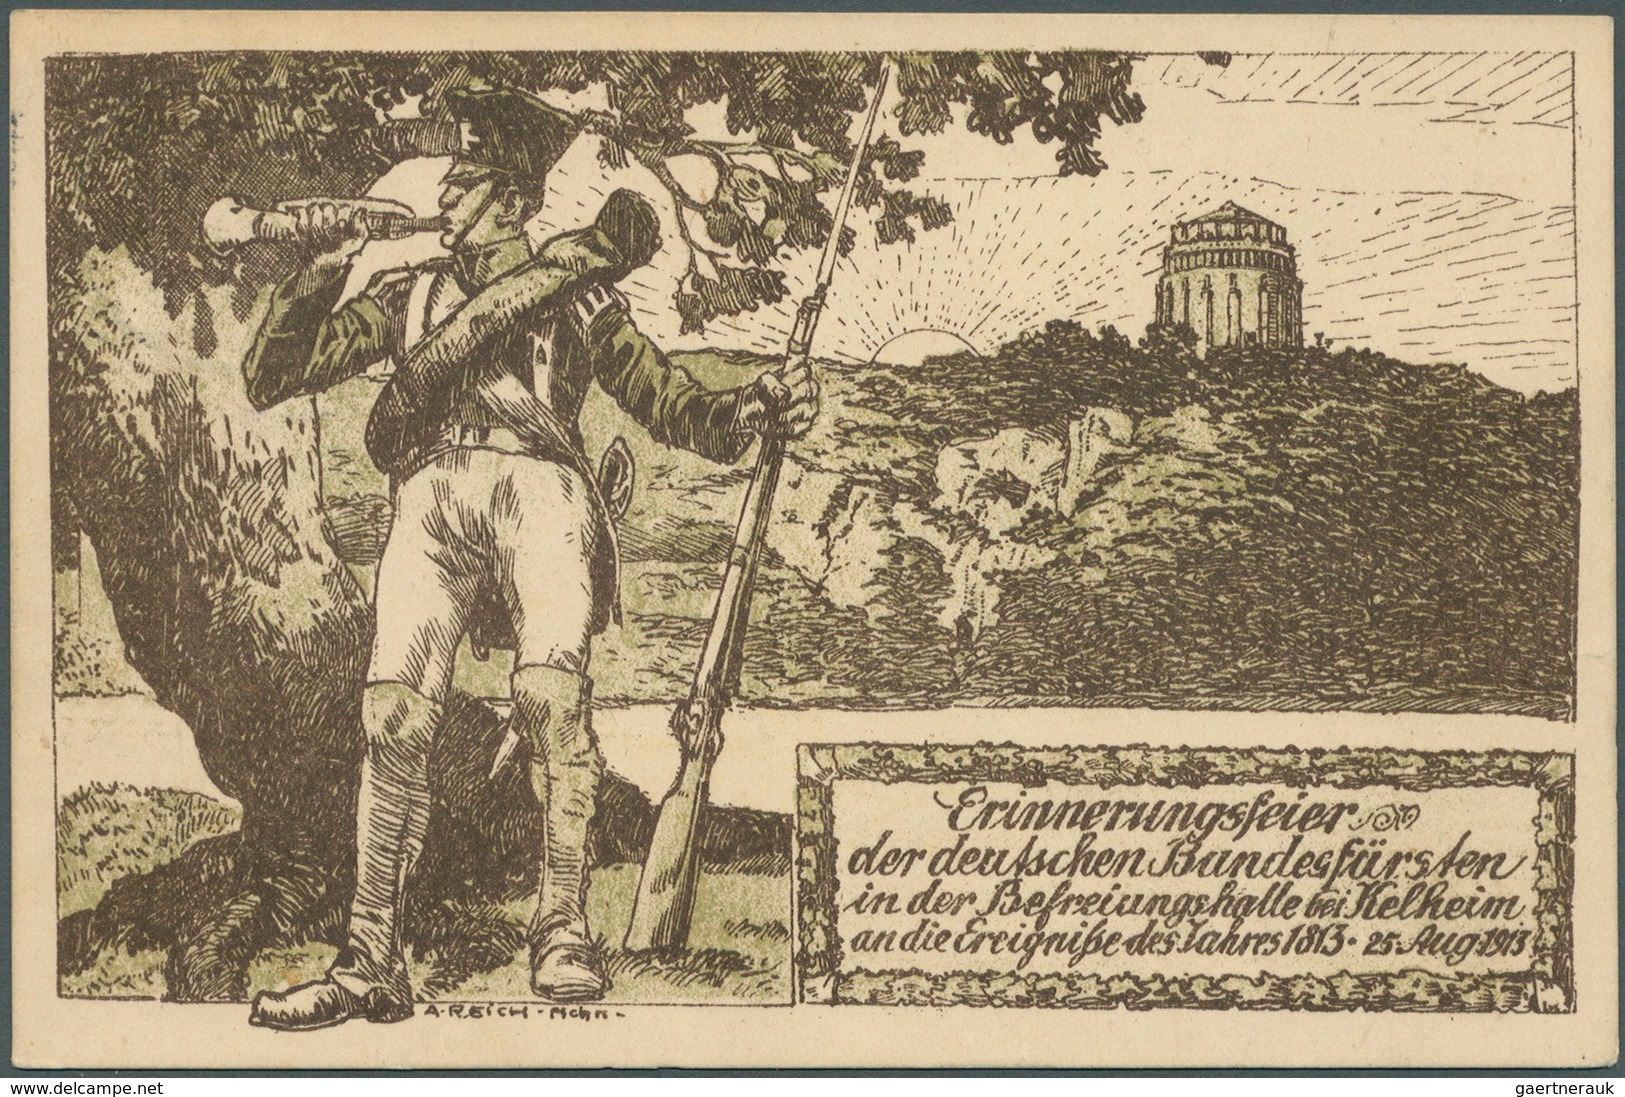 31238 Bayern - Ganzsachen: 1900/1914, Posten von 525 Privat-Postkarten aus PP 15 C 56 bis PP 48 F, ungebra